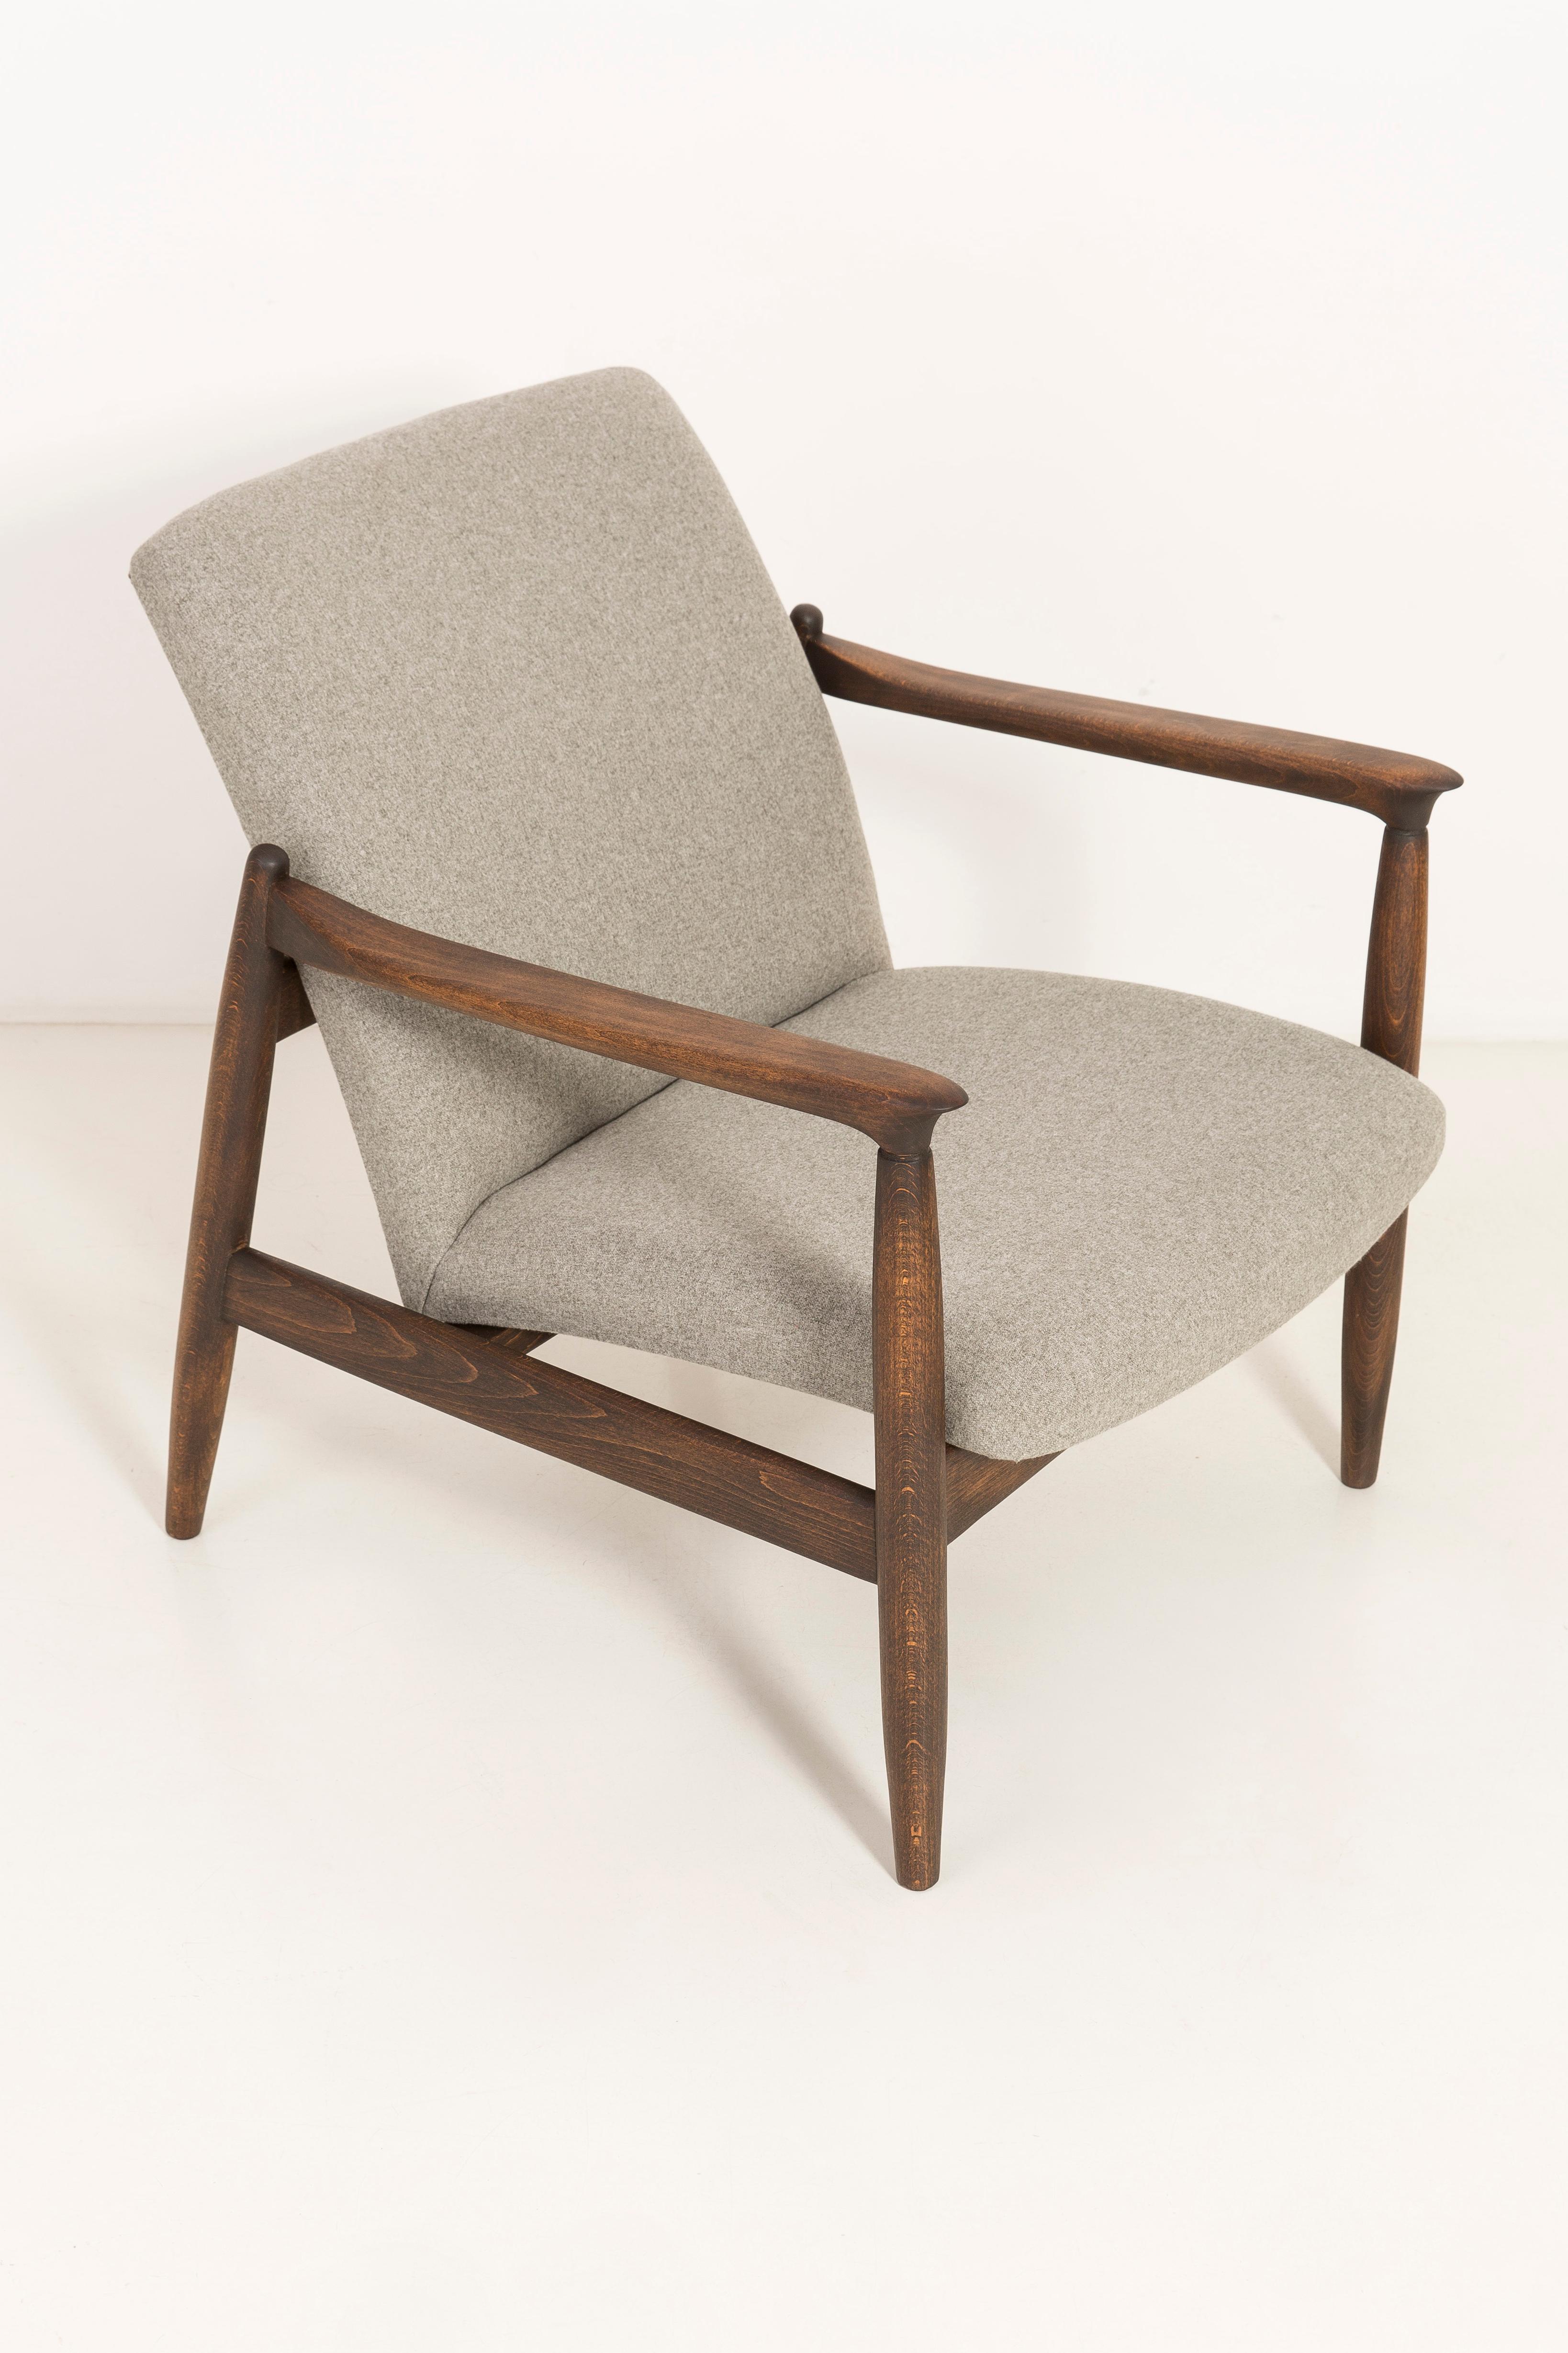 Fauteuil beige, conçu par Edmund Homa. Le fauteuil a été fabriqué dans les années 1960 dans l'usine de meubles Goscieninska. Il est fabriqué en bois de hêtre massif. Le fauteuil de type GFM est considéré comme l'un des meilleurs fauteuils polonais